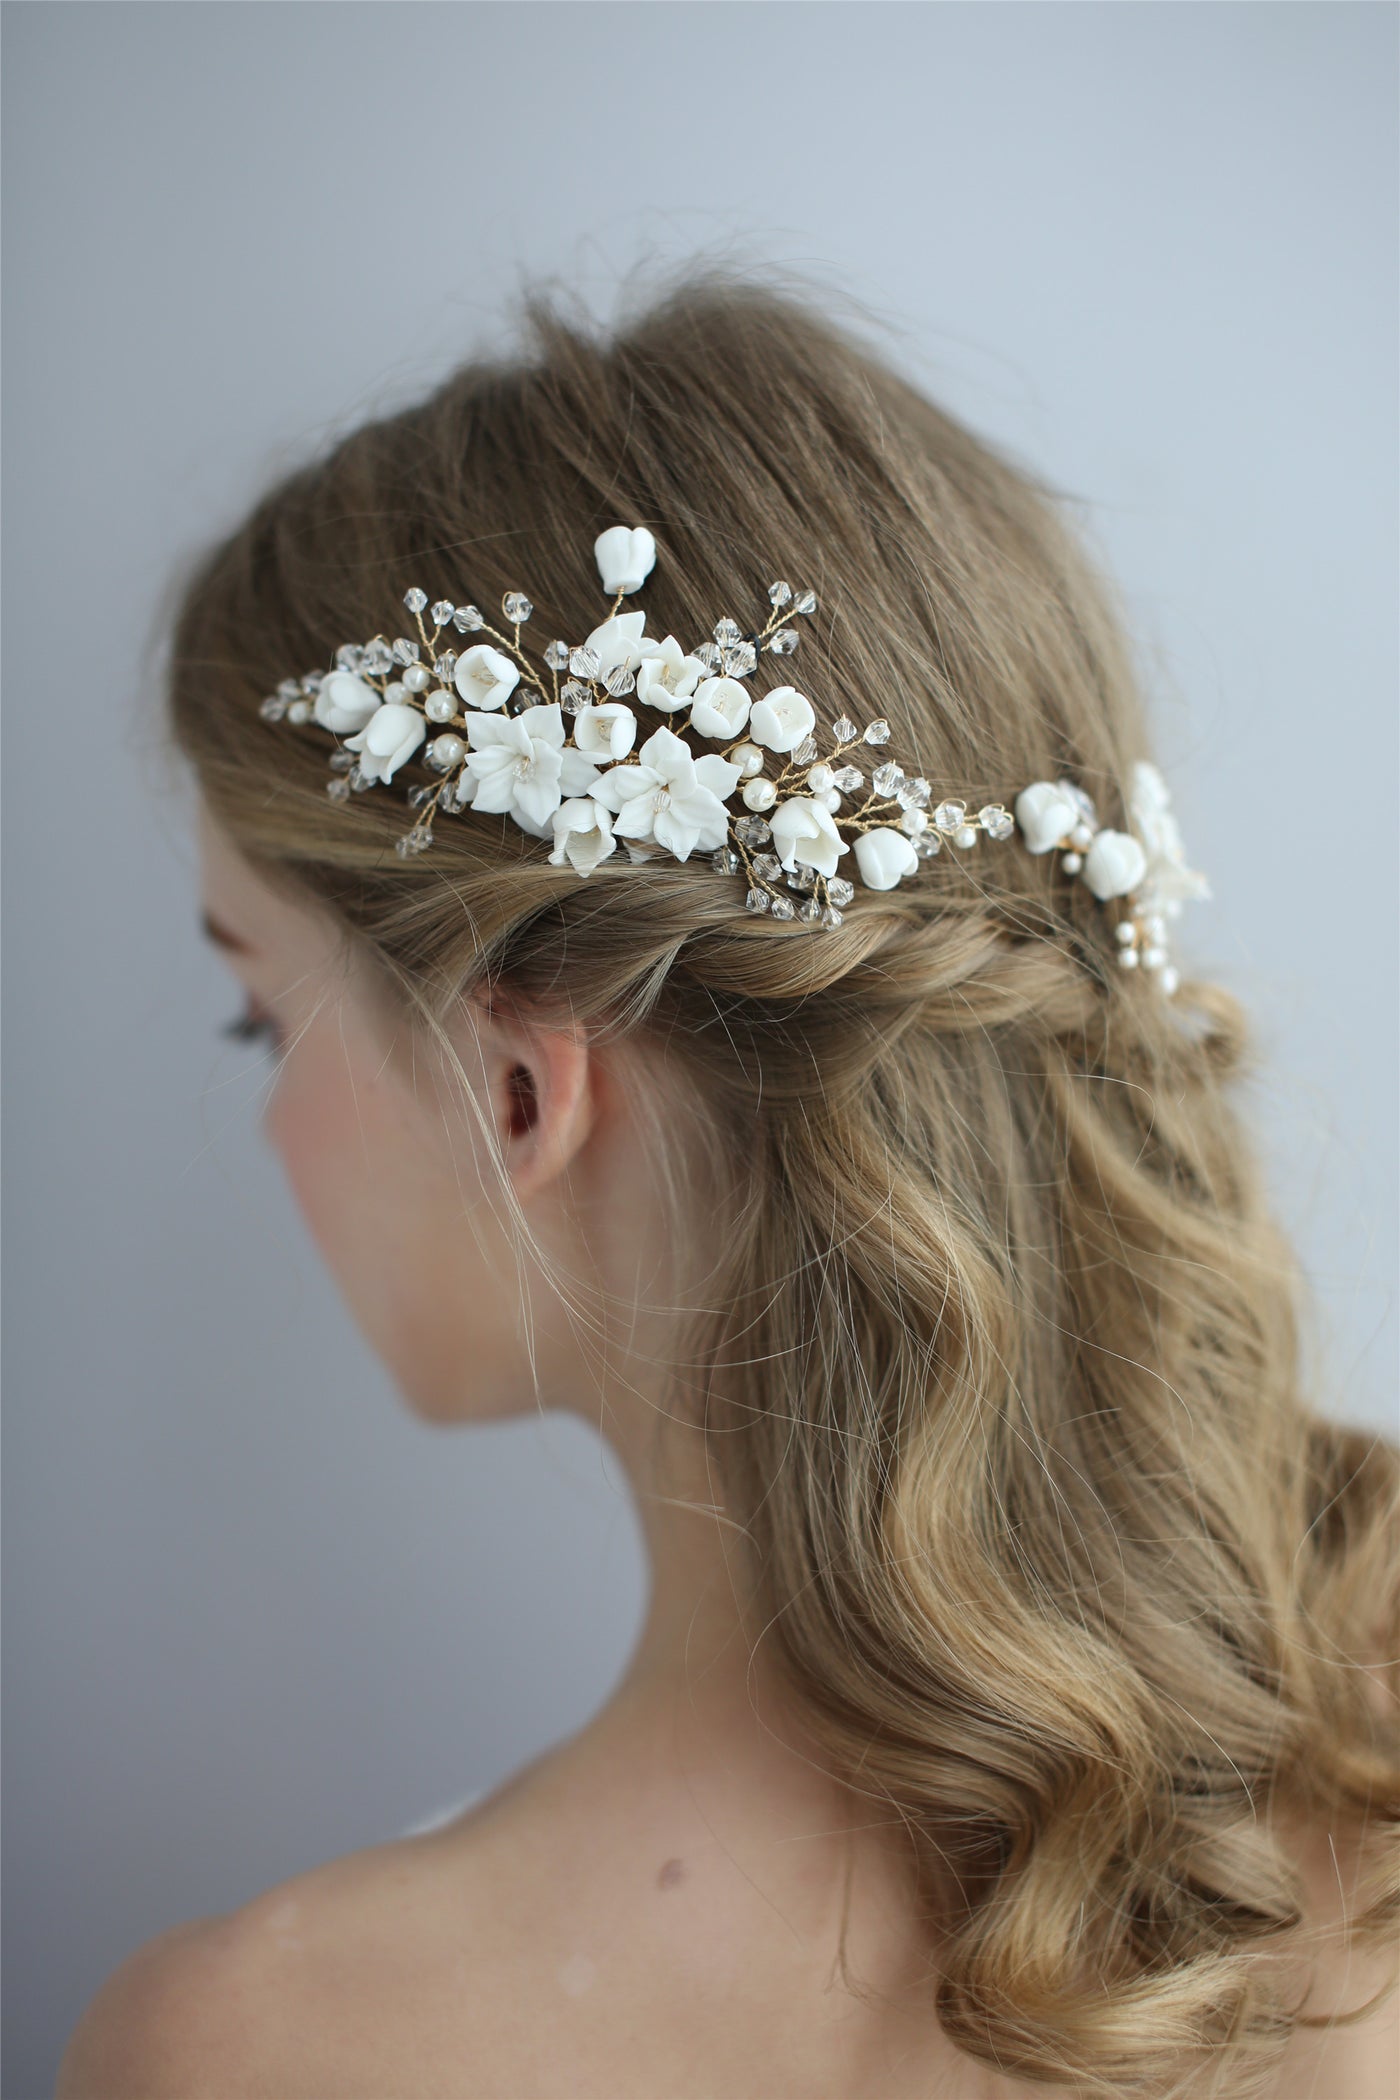 Handmade Bridal Hair Accessories - Ceramic Hair Side Comb